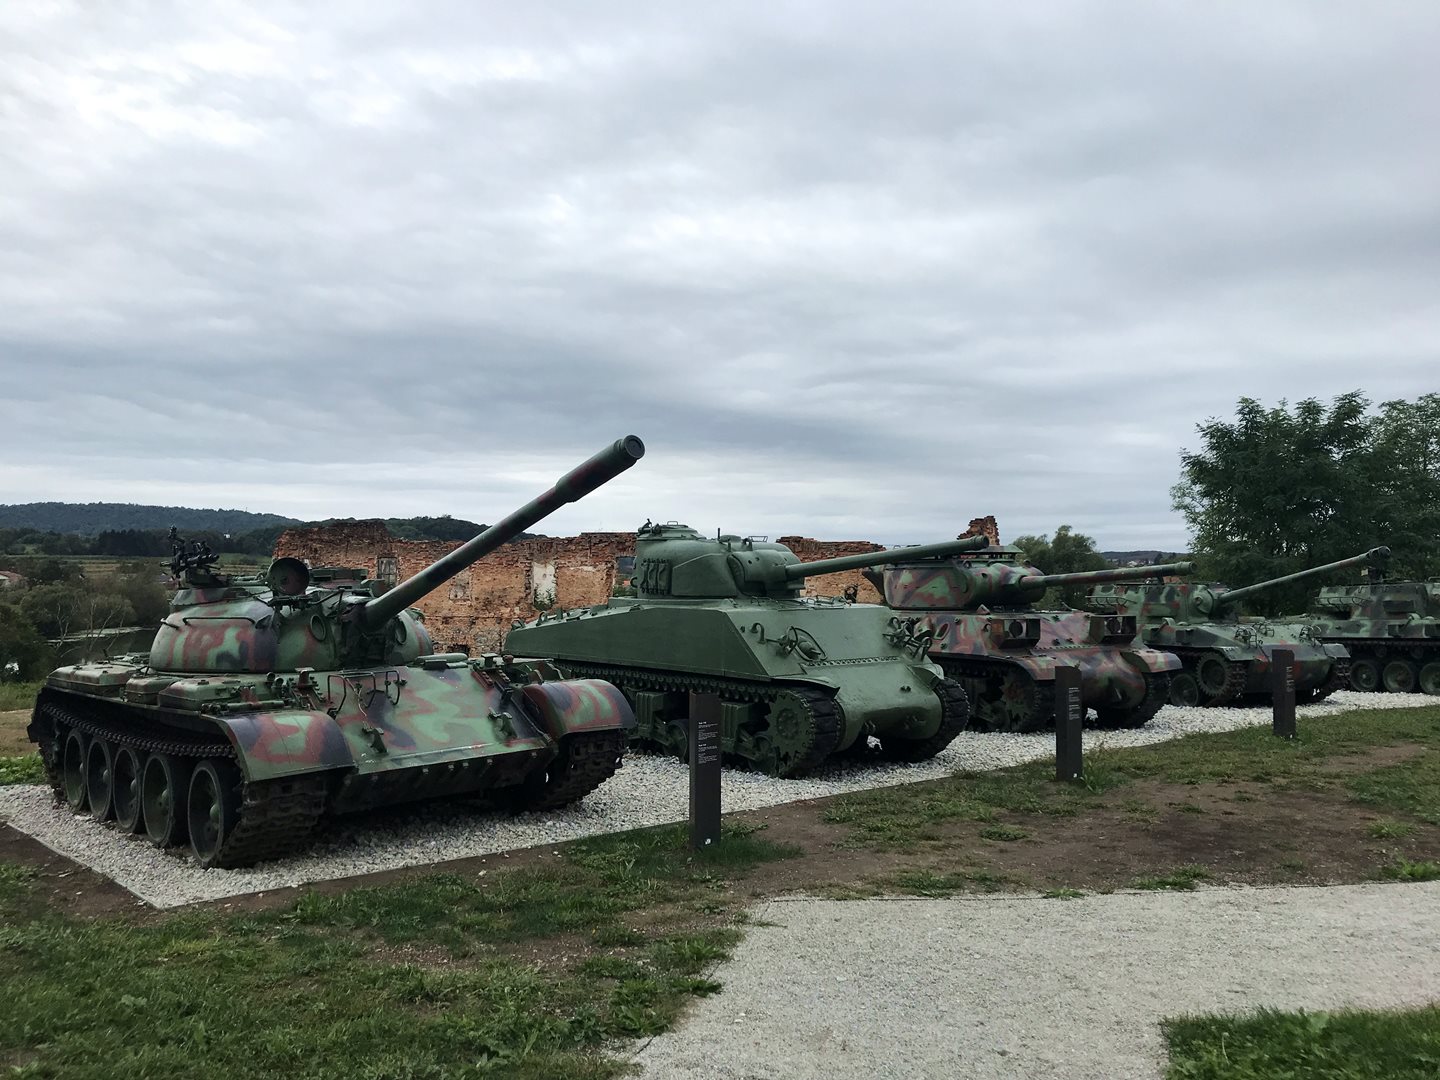 Tankok délszláv háború emlékét őrző múzeumban